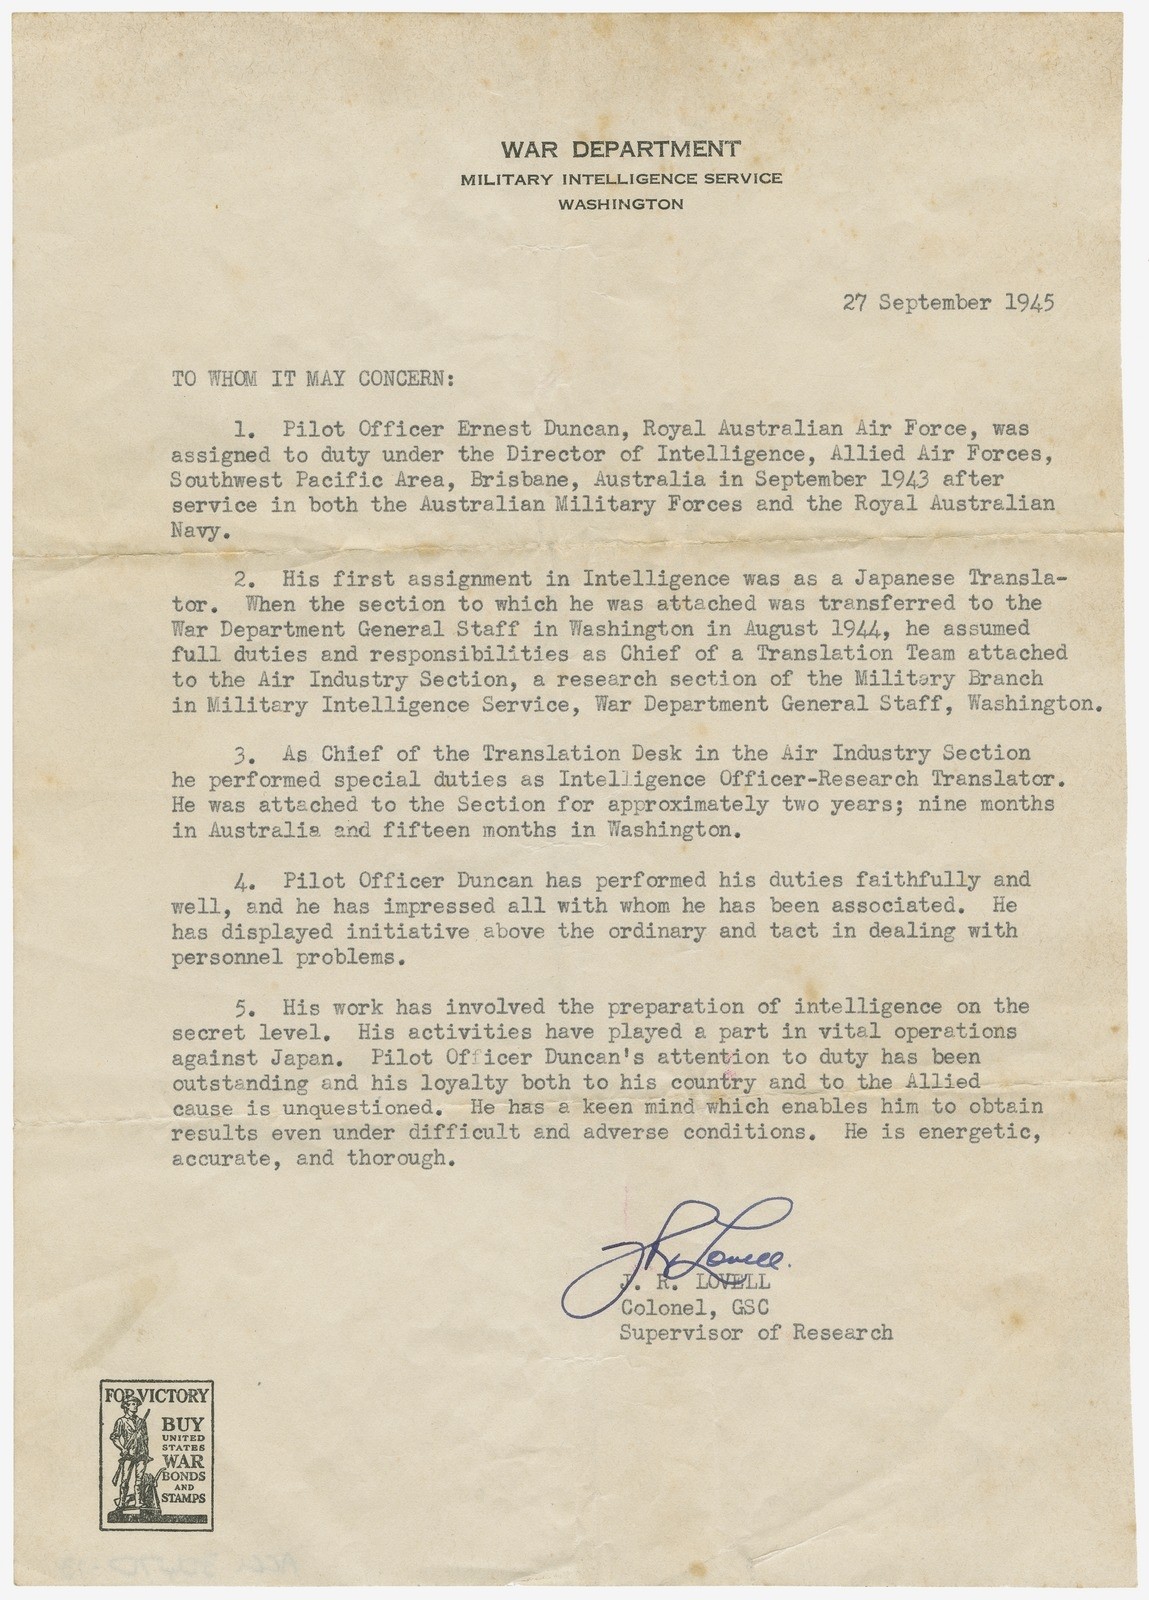 Statement of Pilot Officer Ernest Duncans Military Intelligence Service 27 September 1945